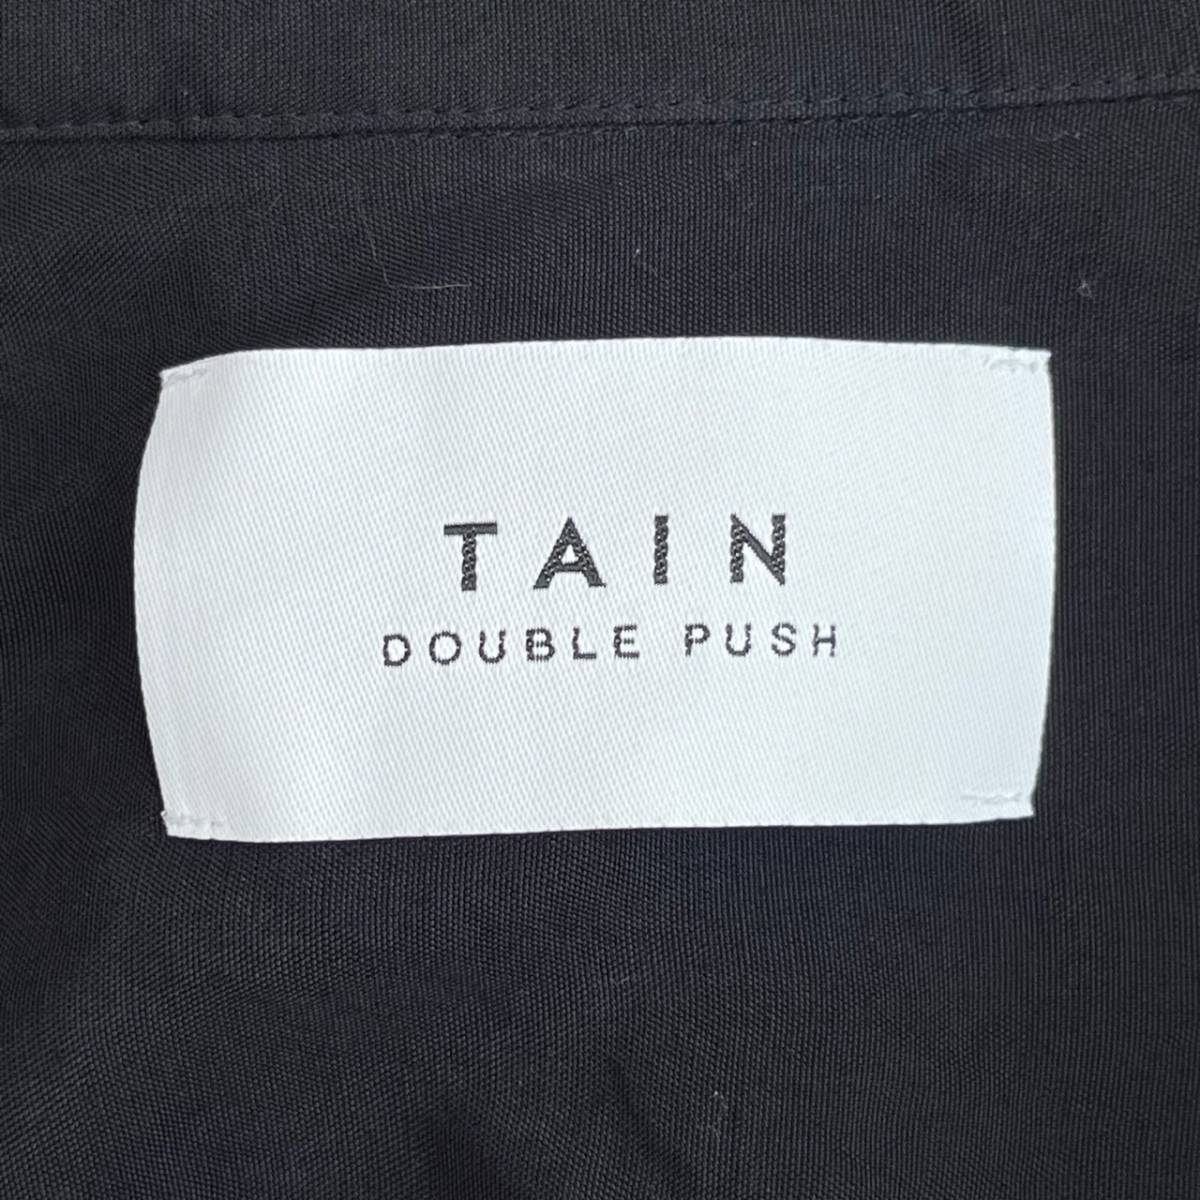 TAIN DOUBLE PUSH タインダブルプッシュ Lサイズ 柄シャツ 半袖 シャツ 開襟 ファイヤー 刺繍 ブラック